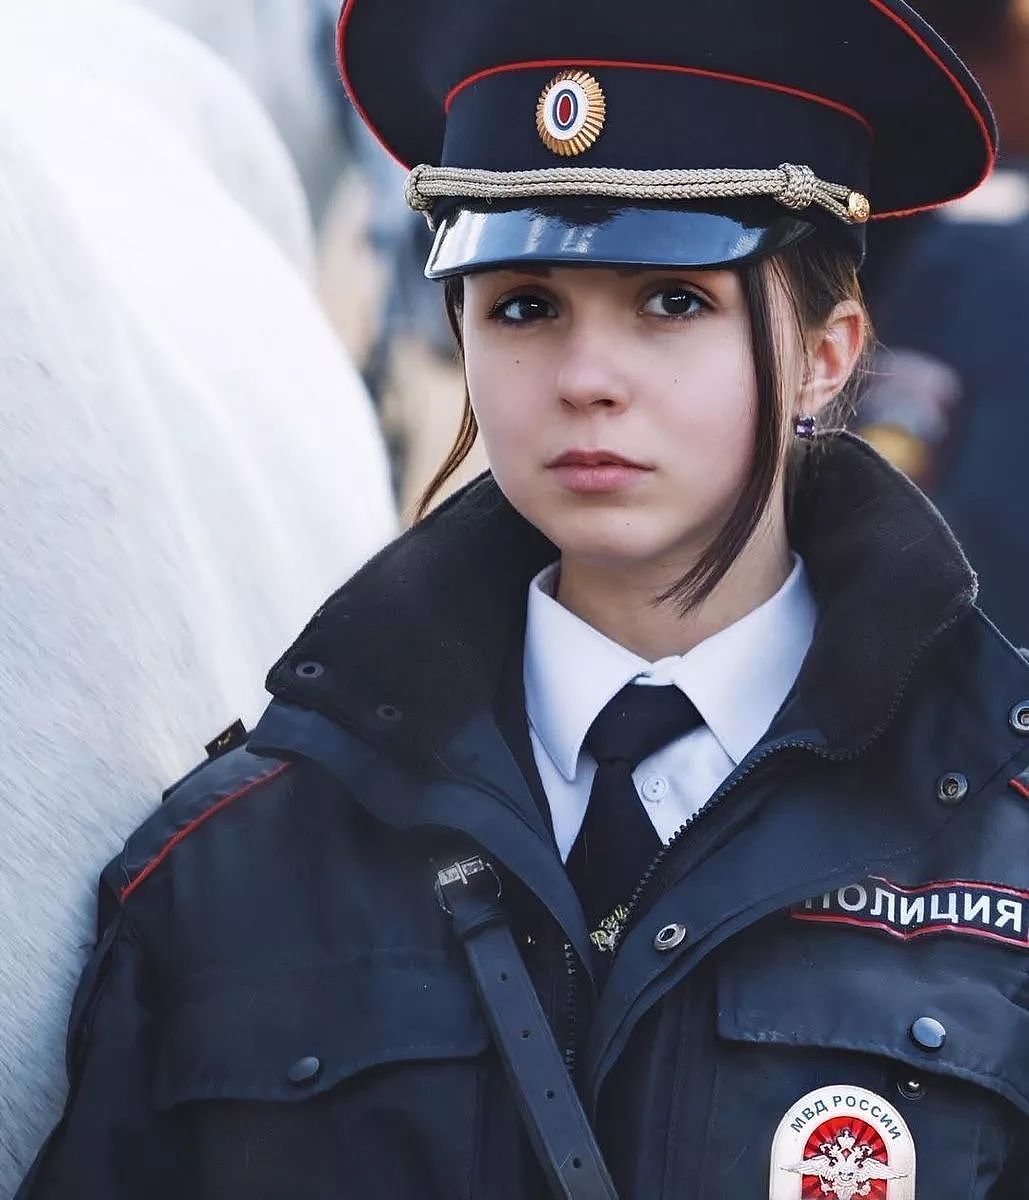 俄罗斯女警美得就像玩警服cosplay一样 - 44